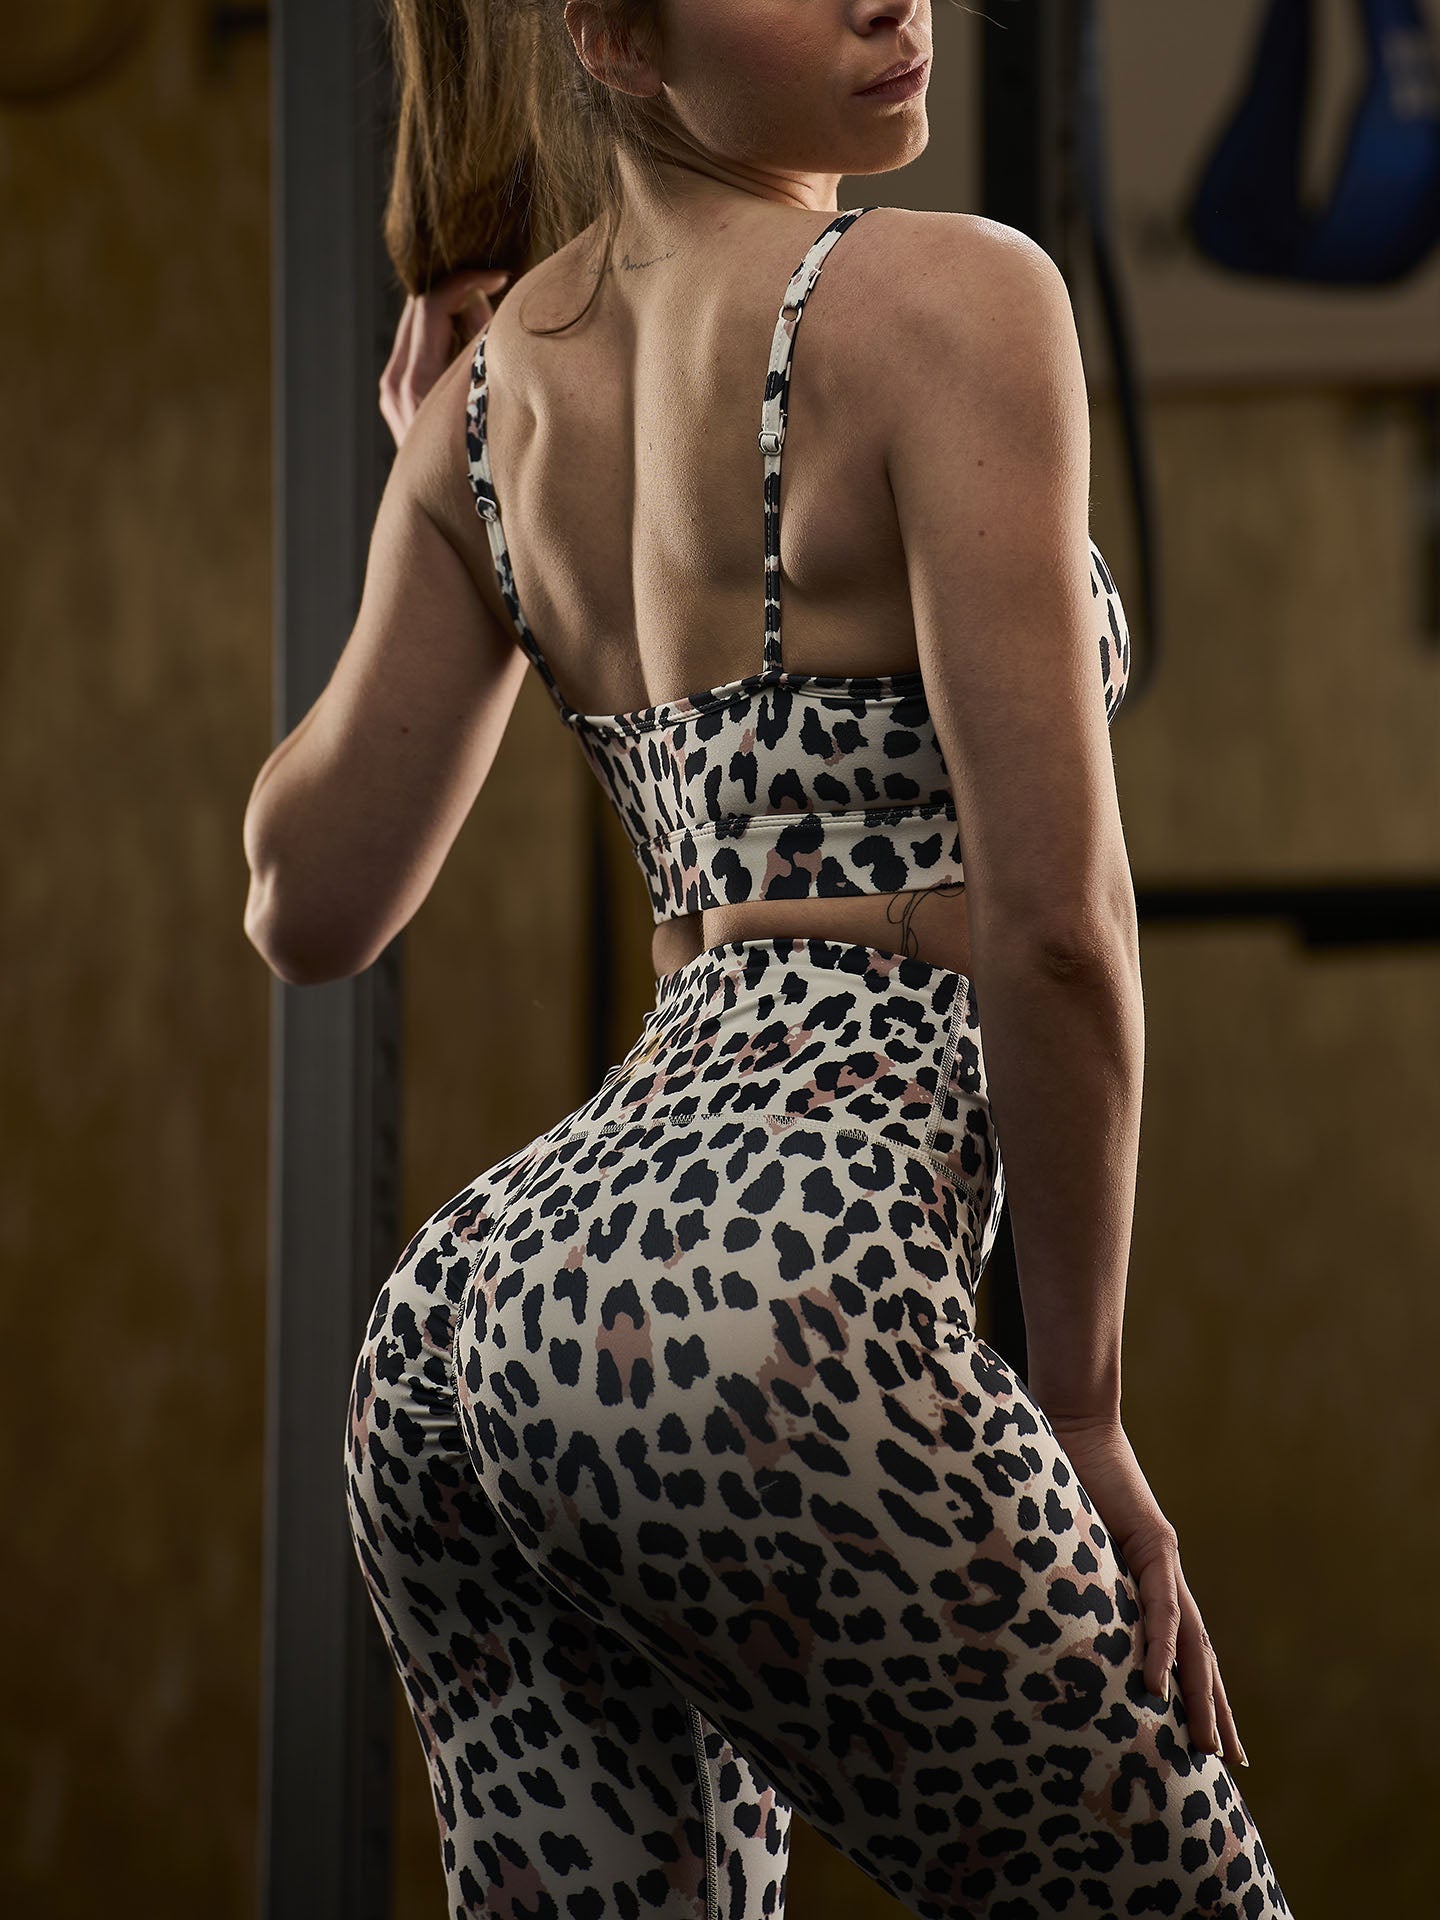 The Cougar - leggings palestra da donna effetto push-up - leggings donna palestra - La Casa dei Campioni®